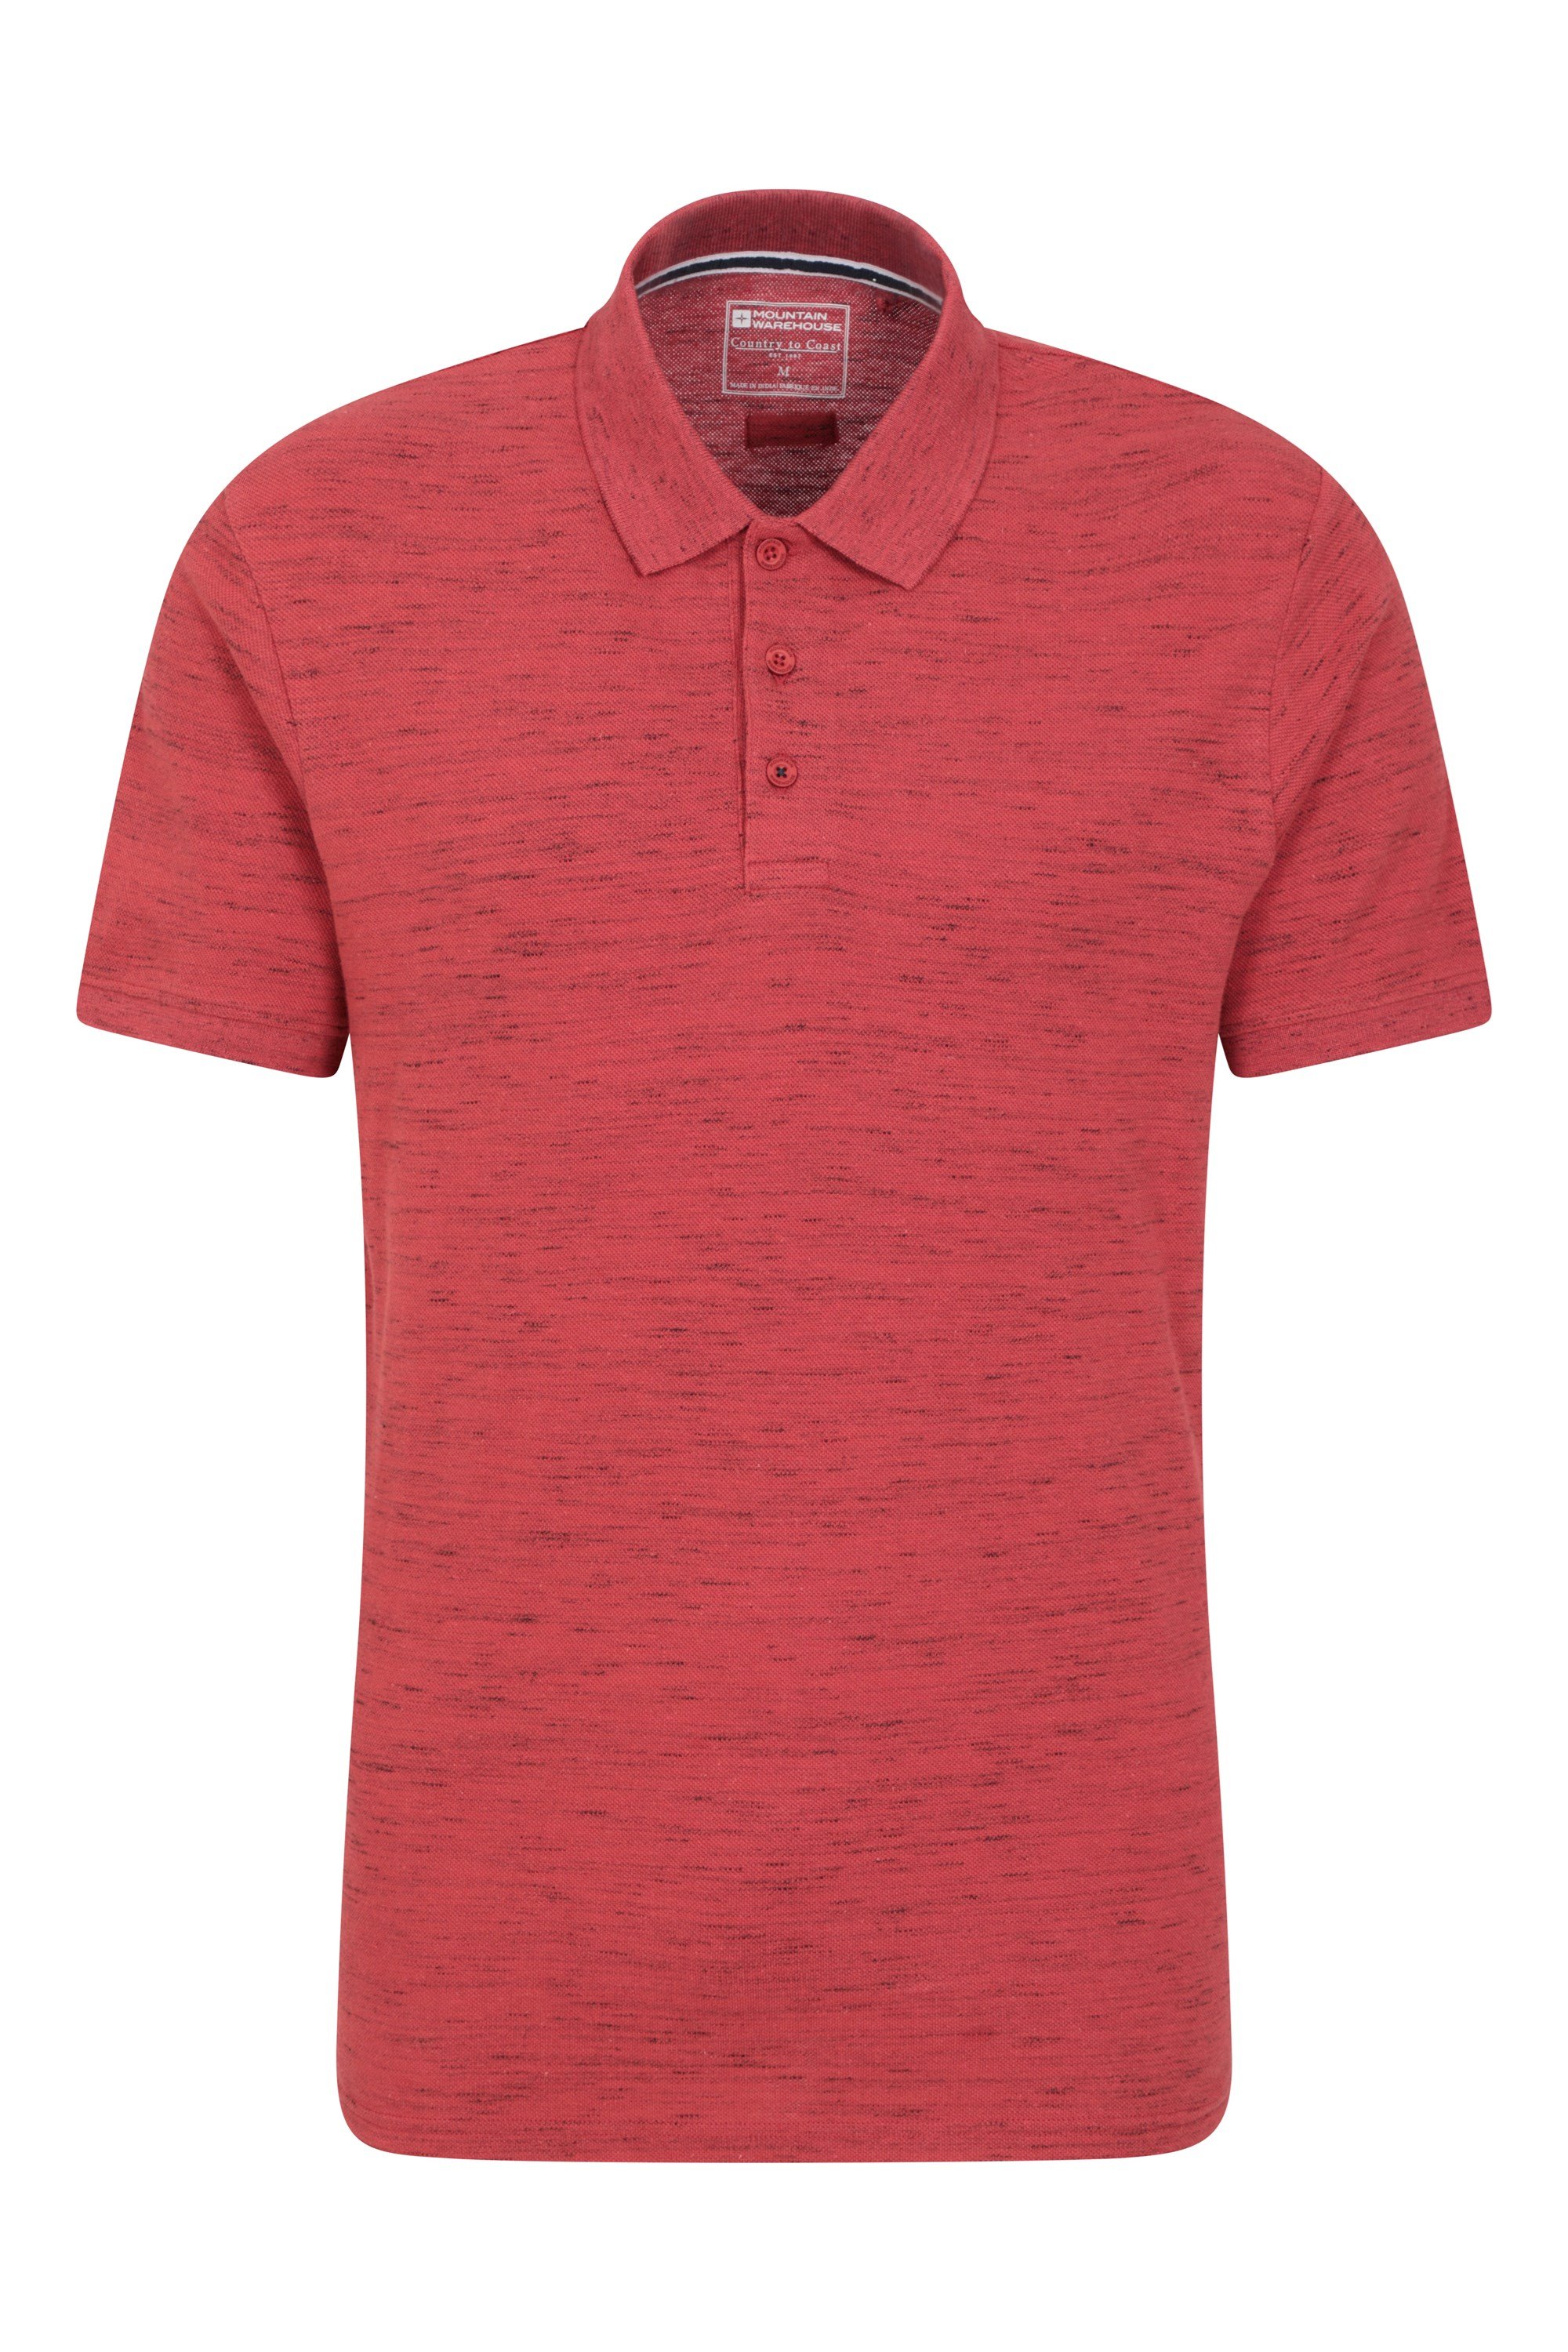 Dawnay Pique Slub Textured Mens Polo Shirt - Pink